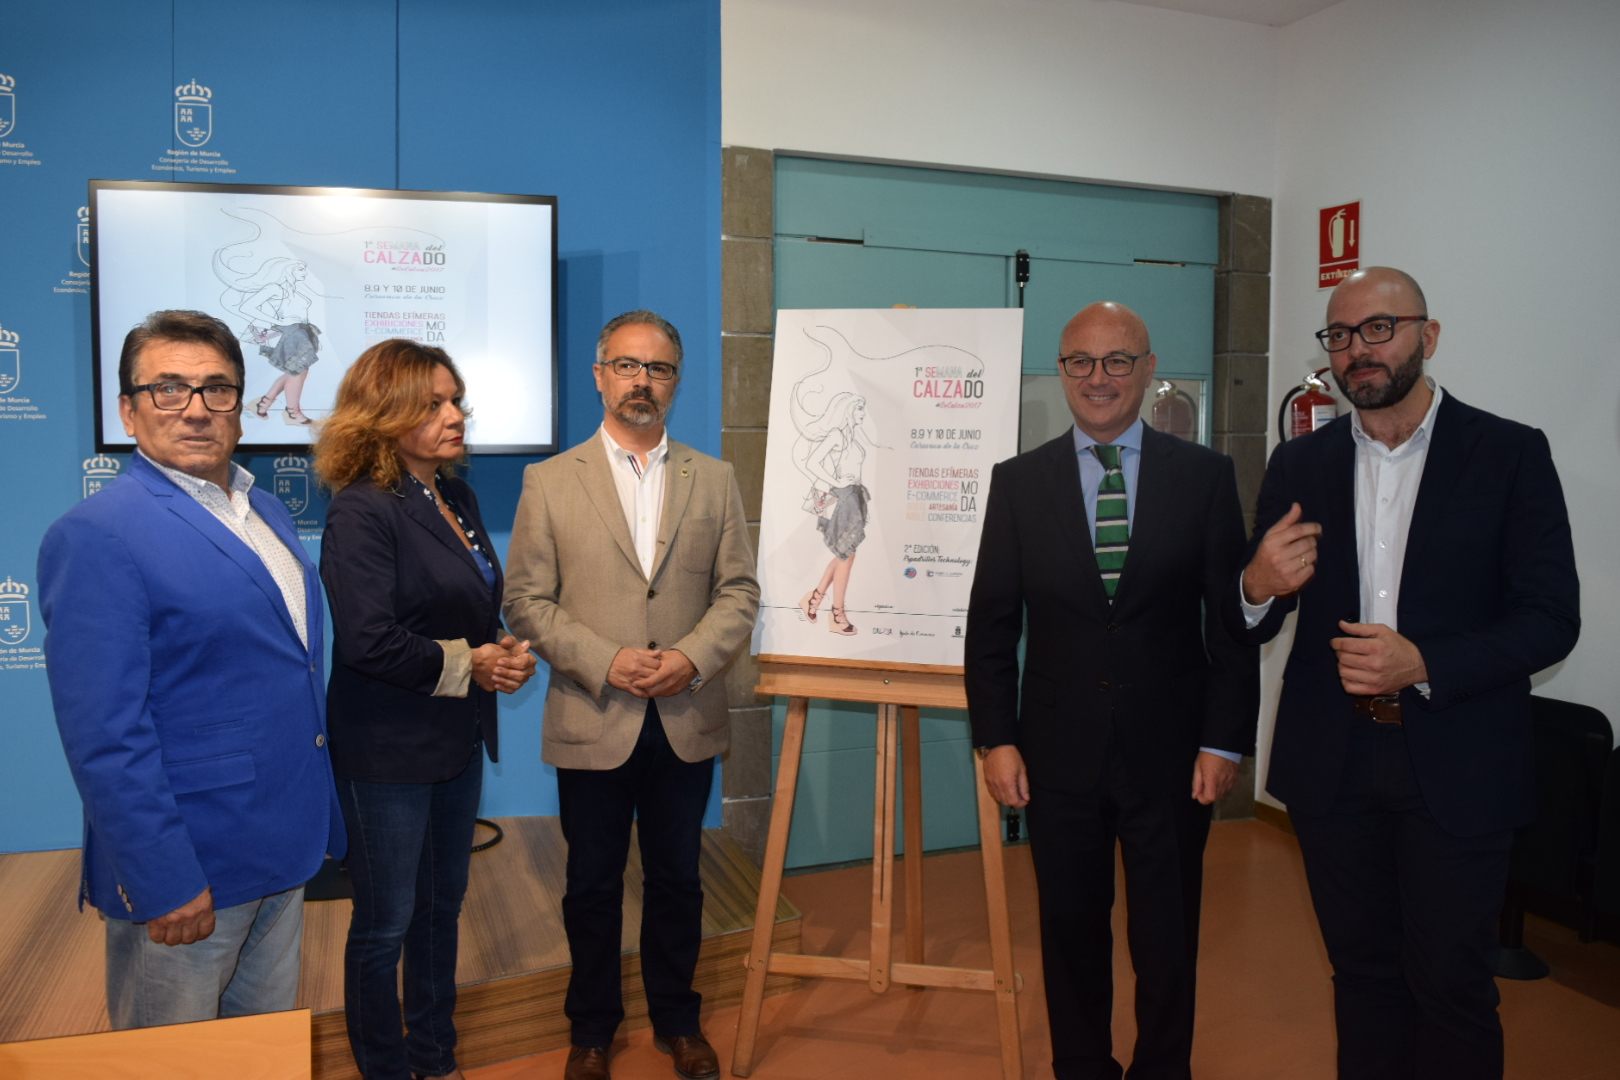 El consejero de Empleo, Universidades y Empresa, Juan Hernández, ha presentado el cartel de la I Feria y Semana del Calzado de Caravaca de la Cruz